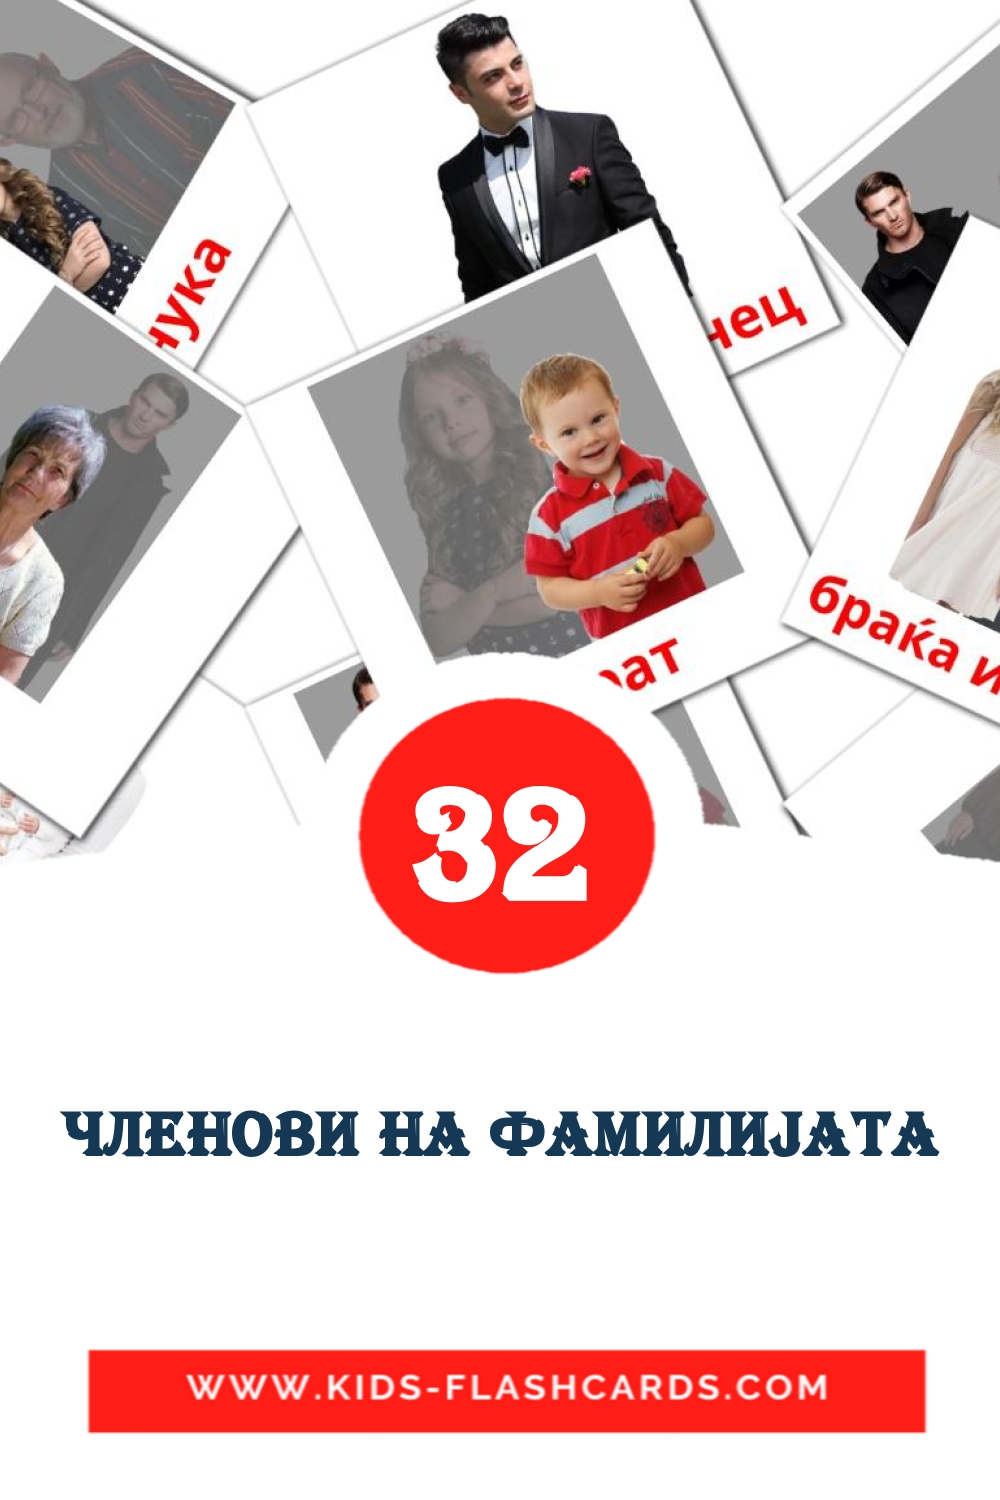 32 cartes illustrées de Членови на фамилиjата pour la maternelle en macédonien